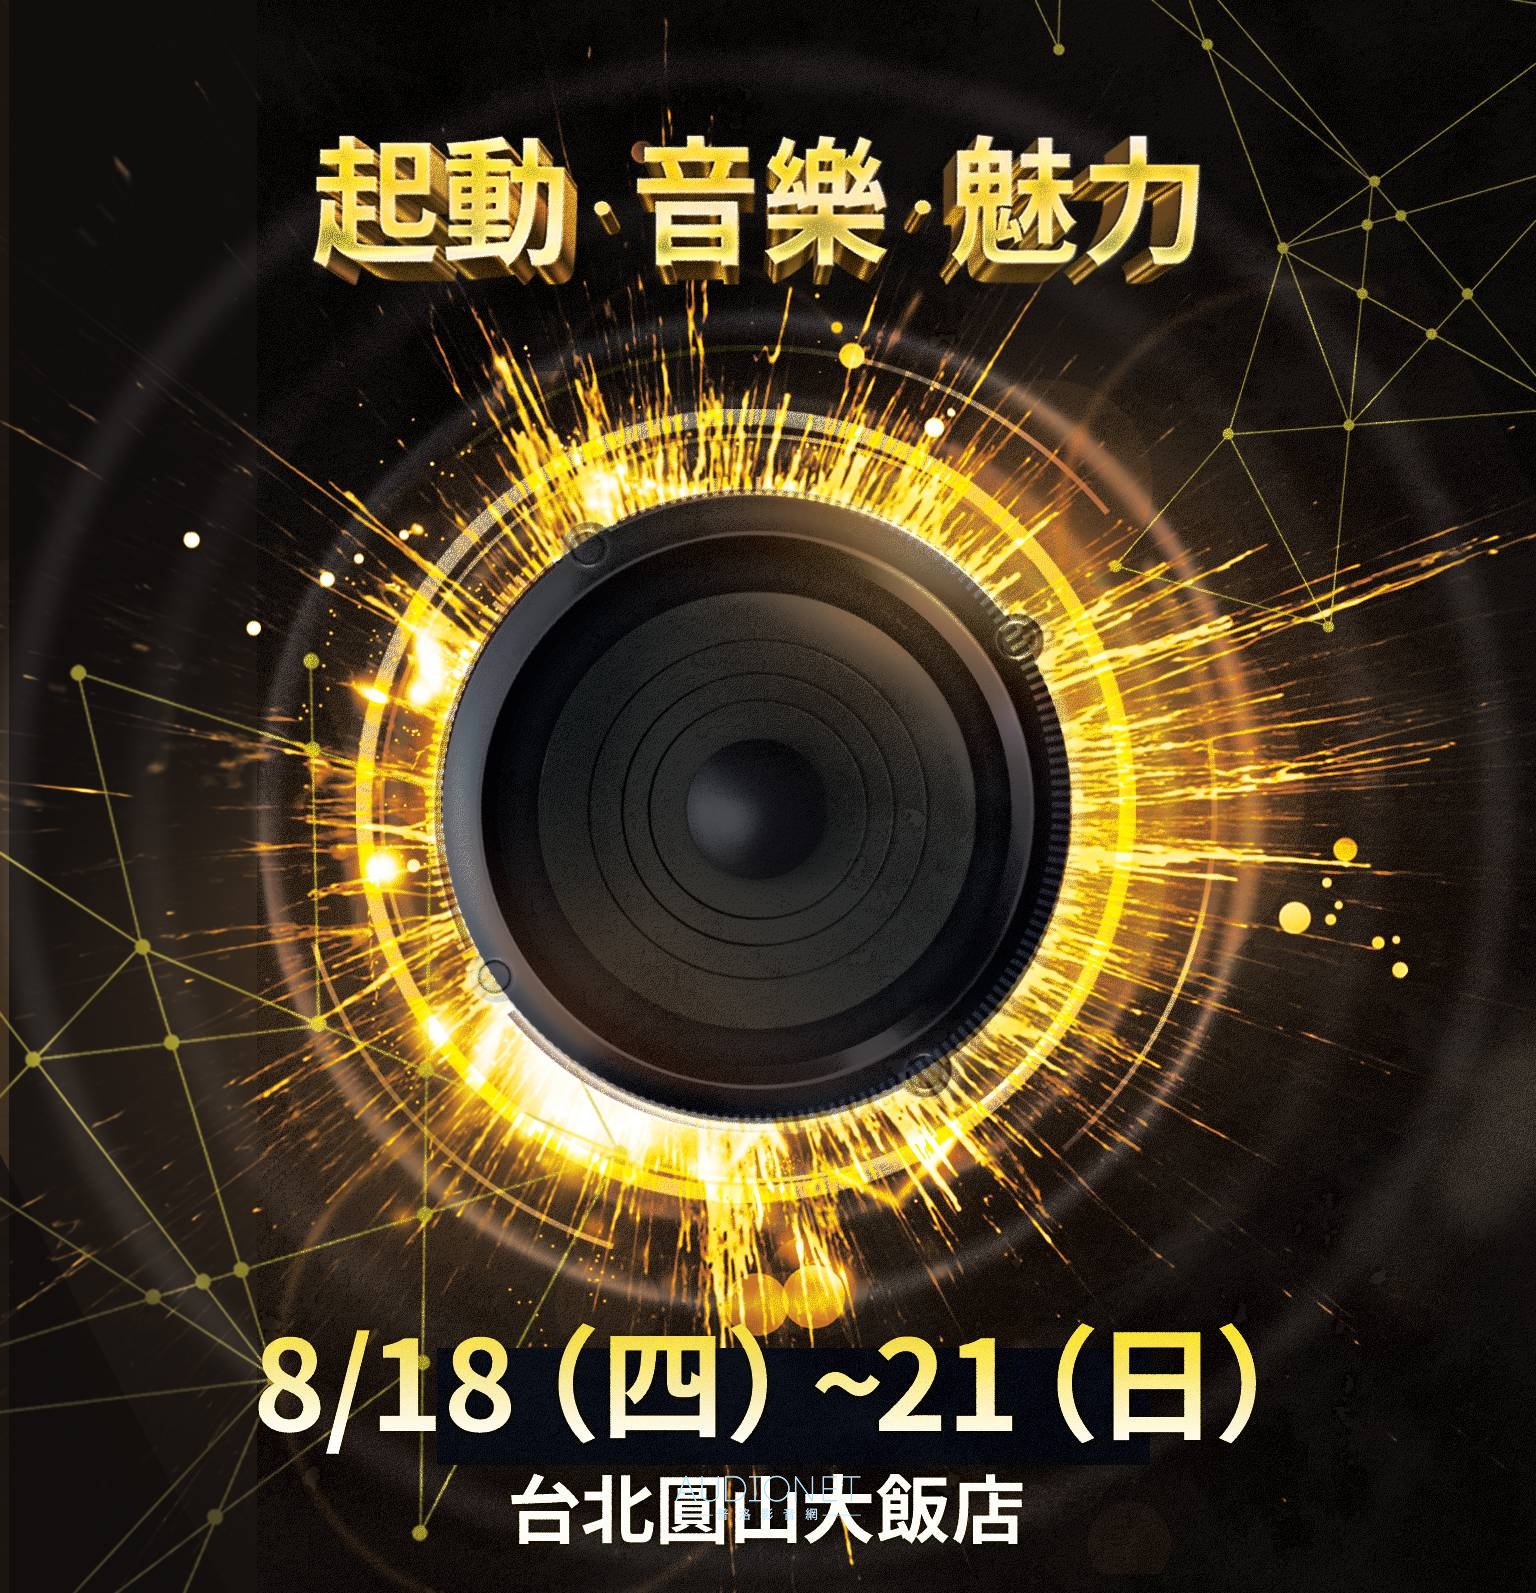 2022年TAA音響展報導，8月18日-21日在台北圓山大飯店